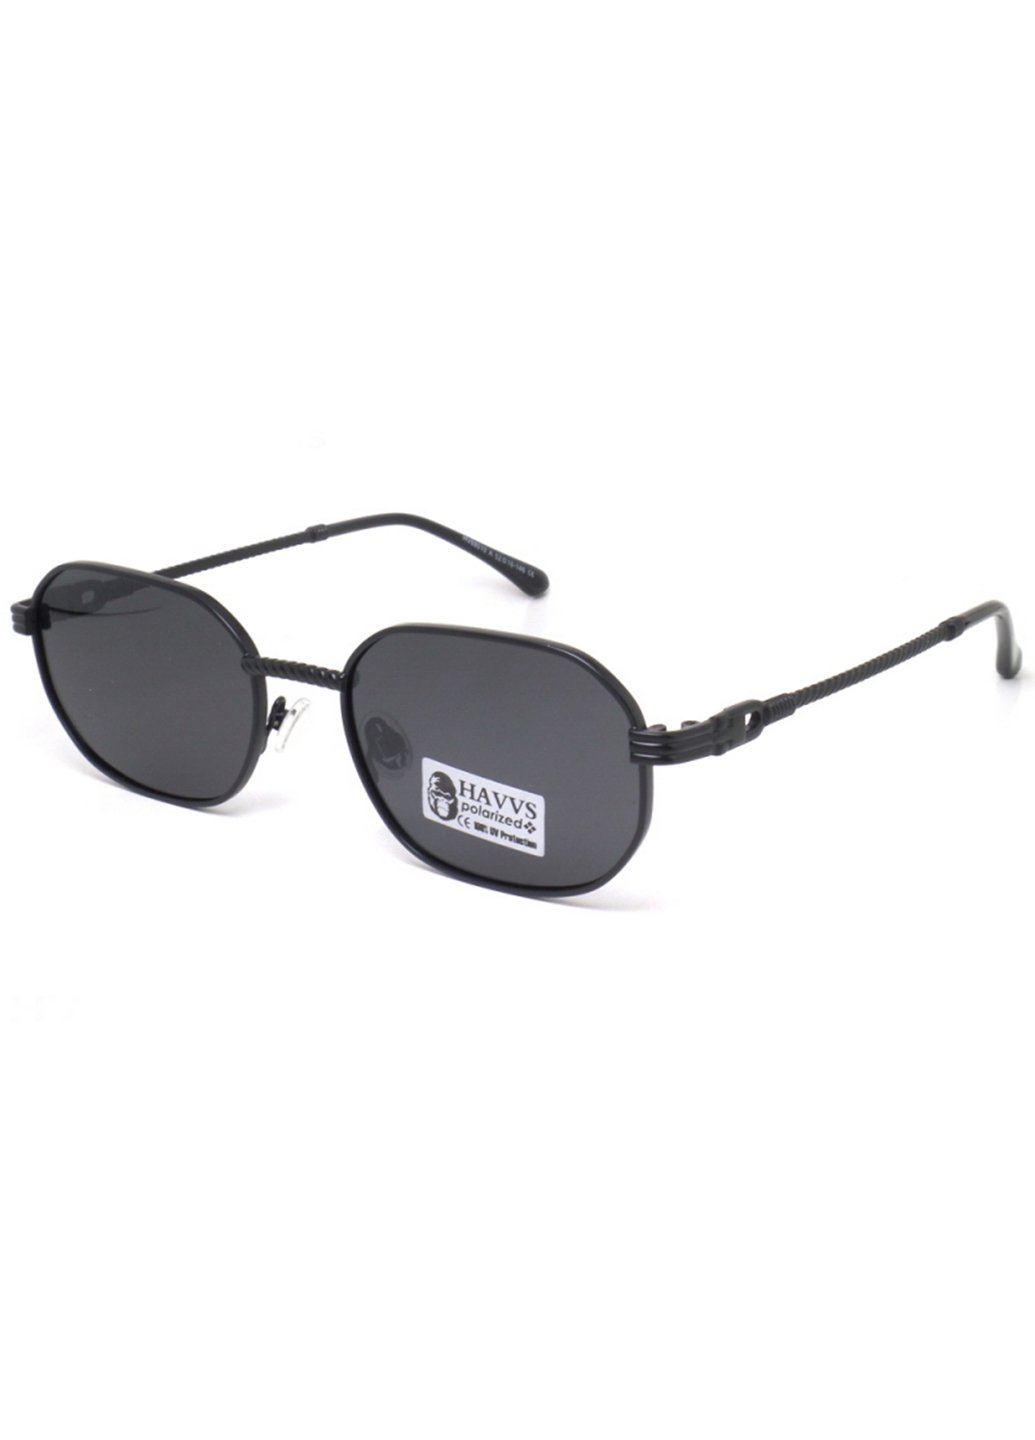 Купить Солнцезащитные очки c поляризацией HAVVS HV68010 170001 - Черный в интернет-магазине